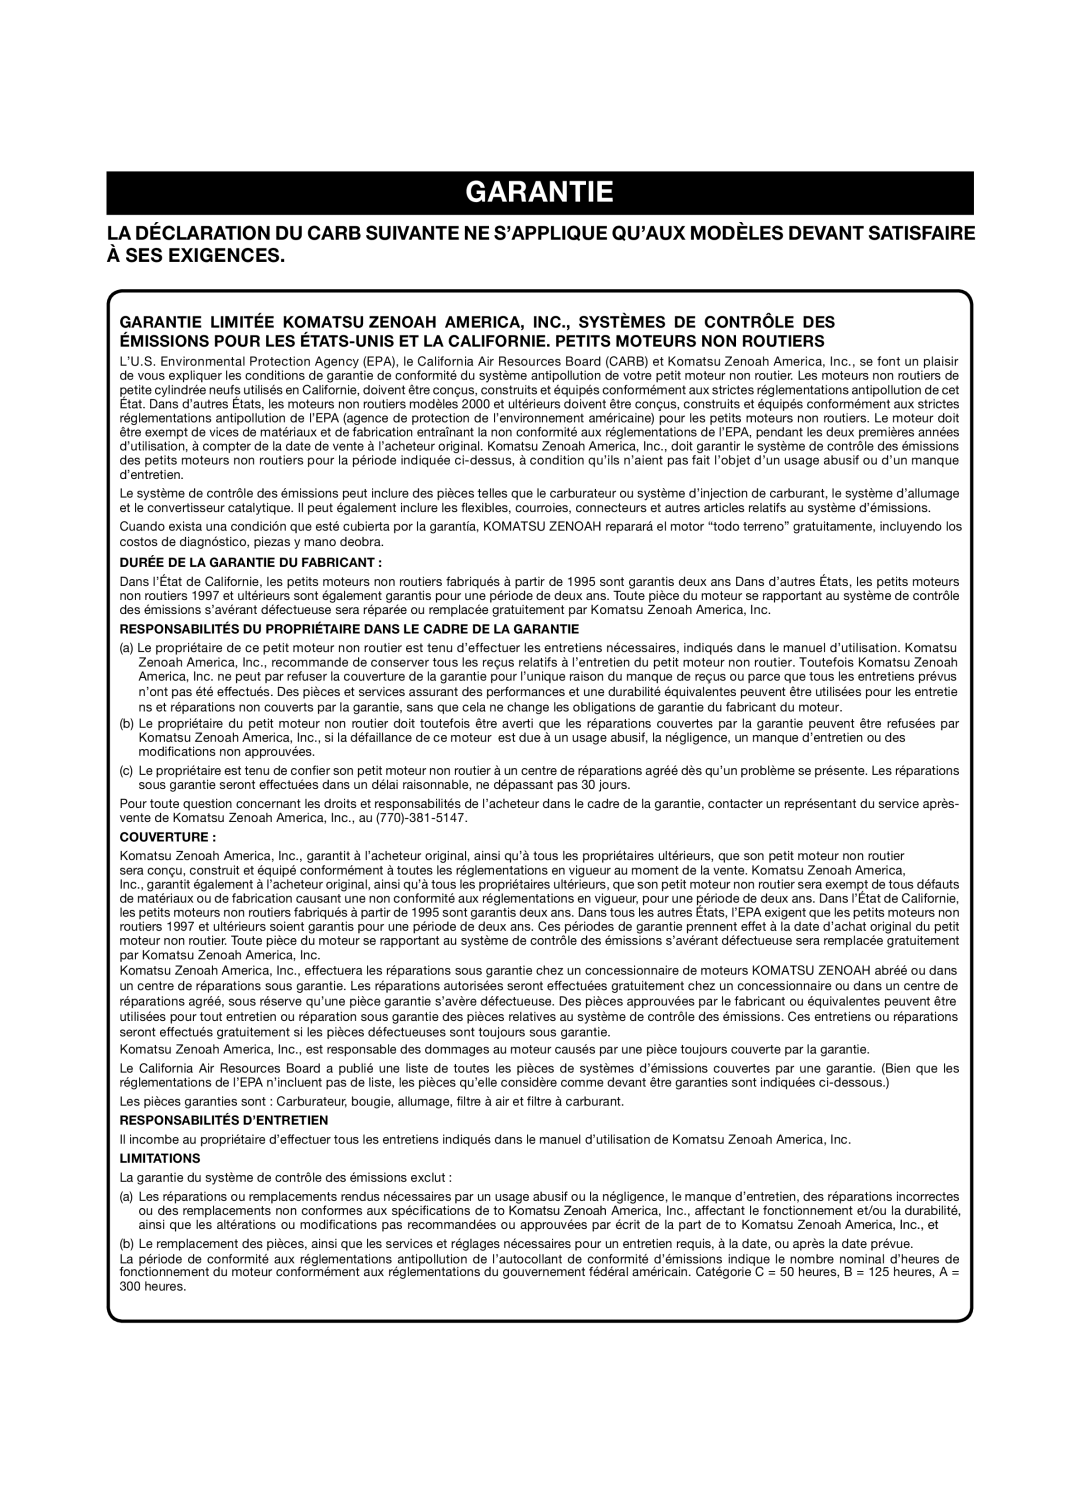 Zenoah GZ400 manual Durée De La Garantie Du Fabricant, Responsabilités Du Propriétaire Dans Le Cadre De La Garantie 